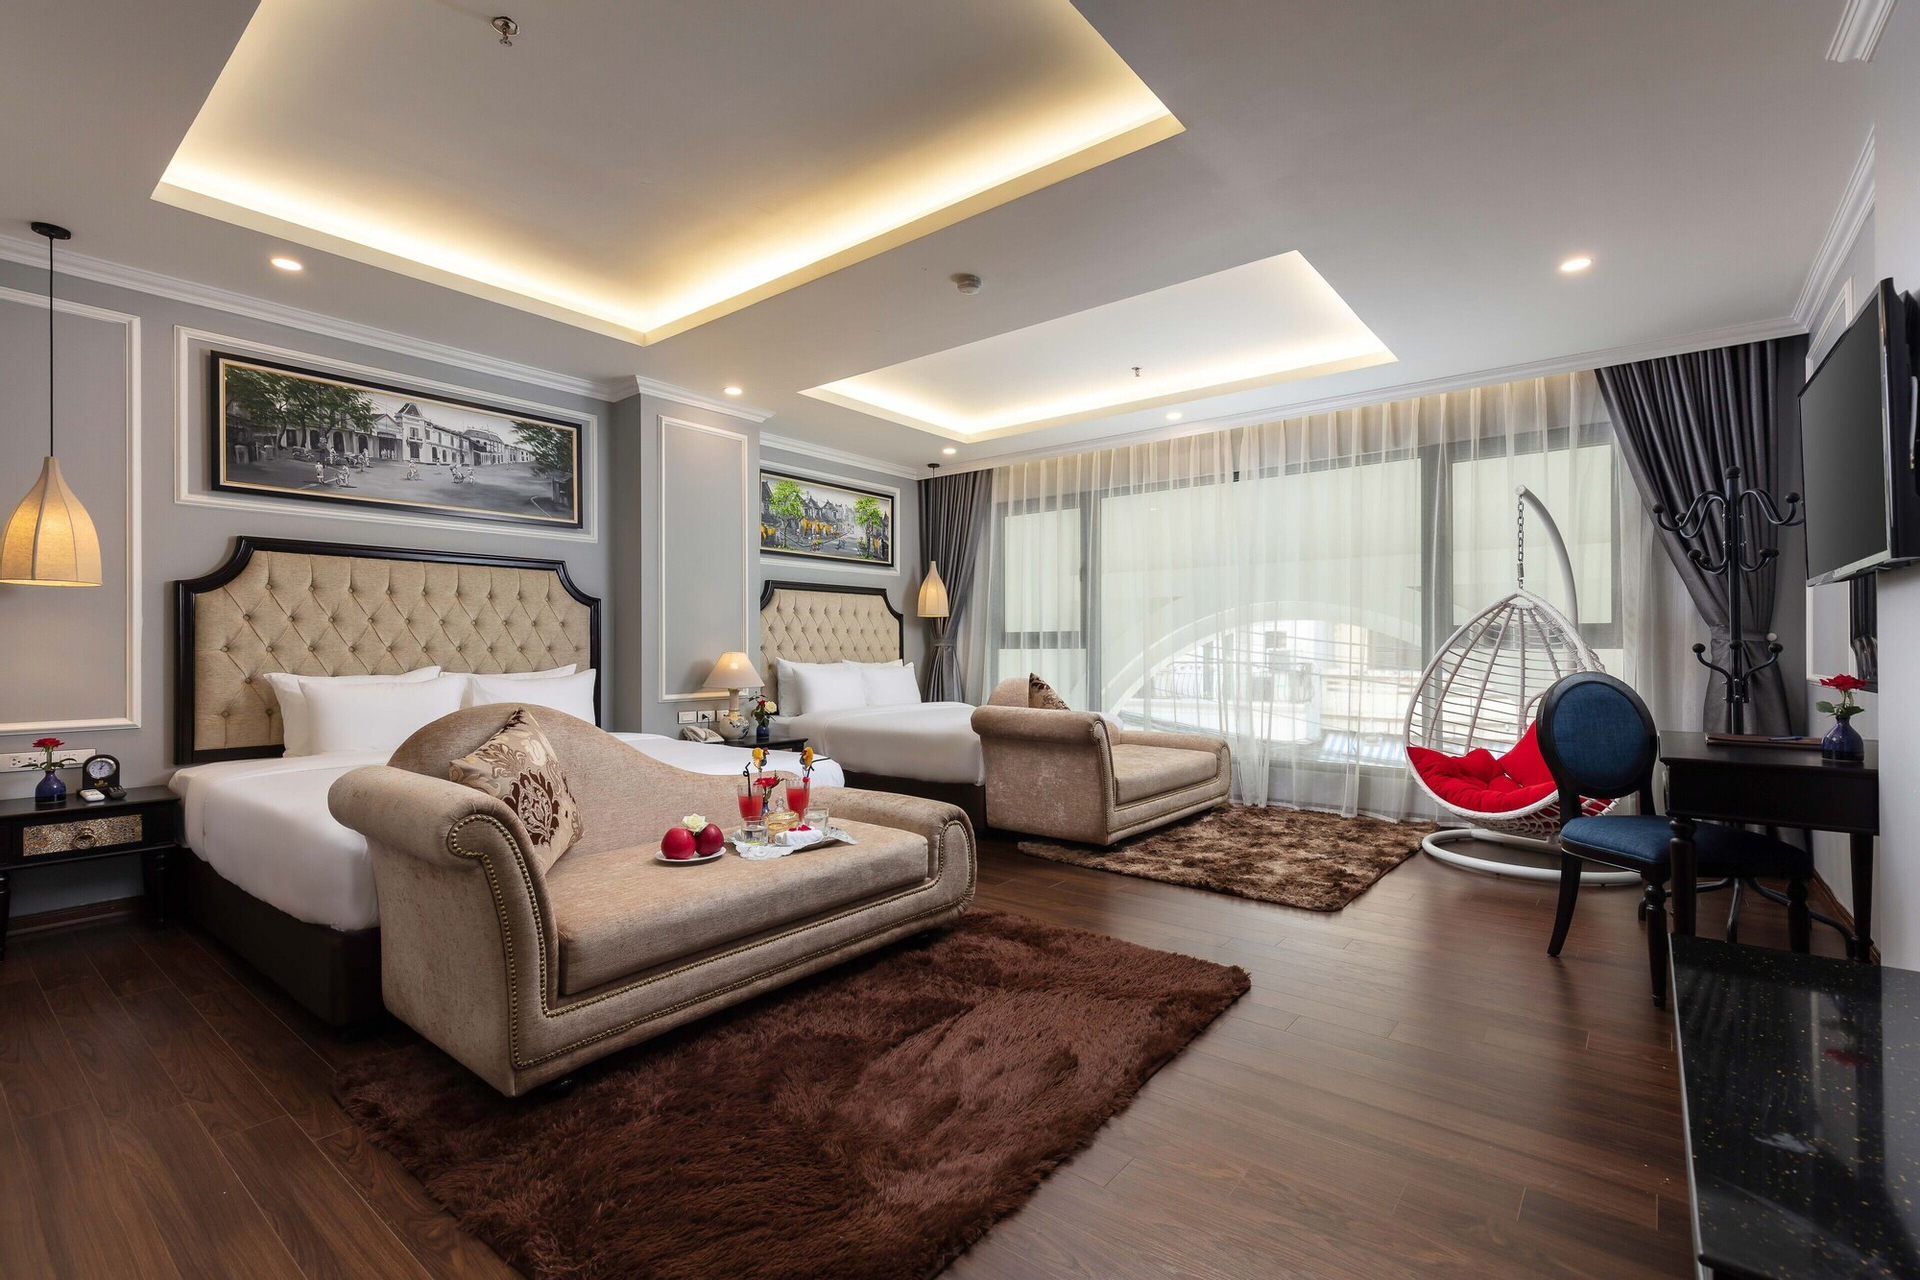 Bedroom 1, Babylon Premium Hotel & Spa, Hoàn Kiếm